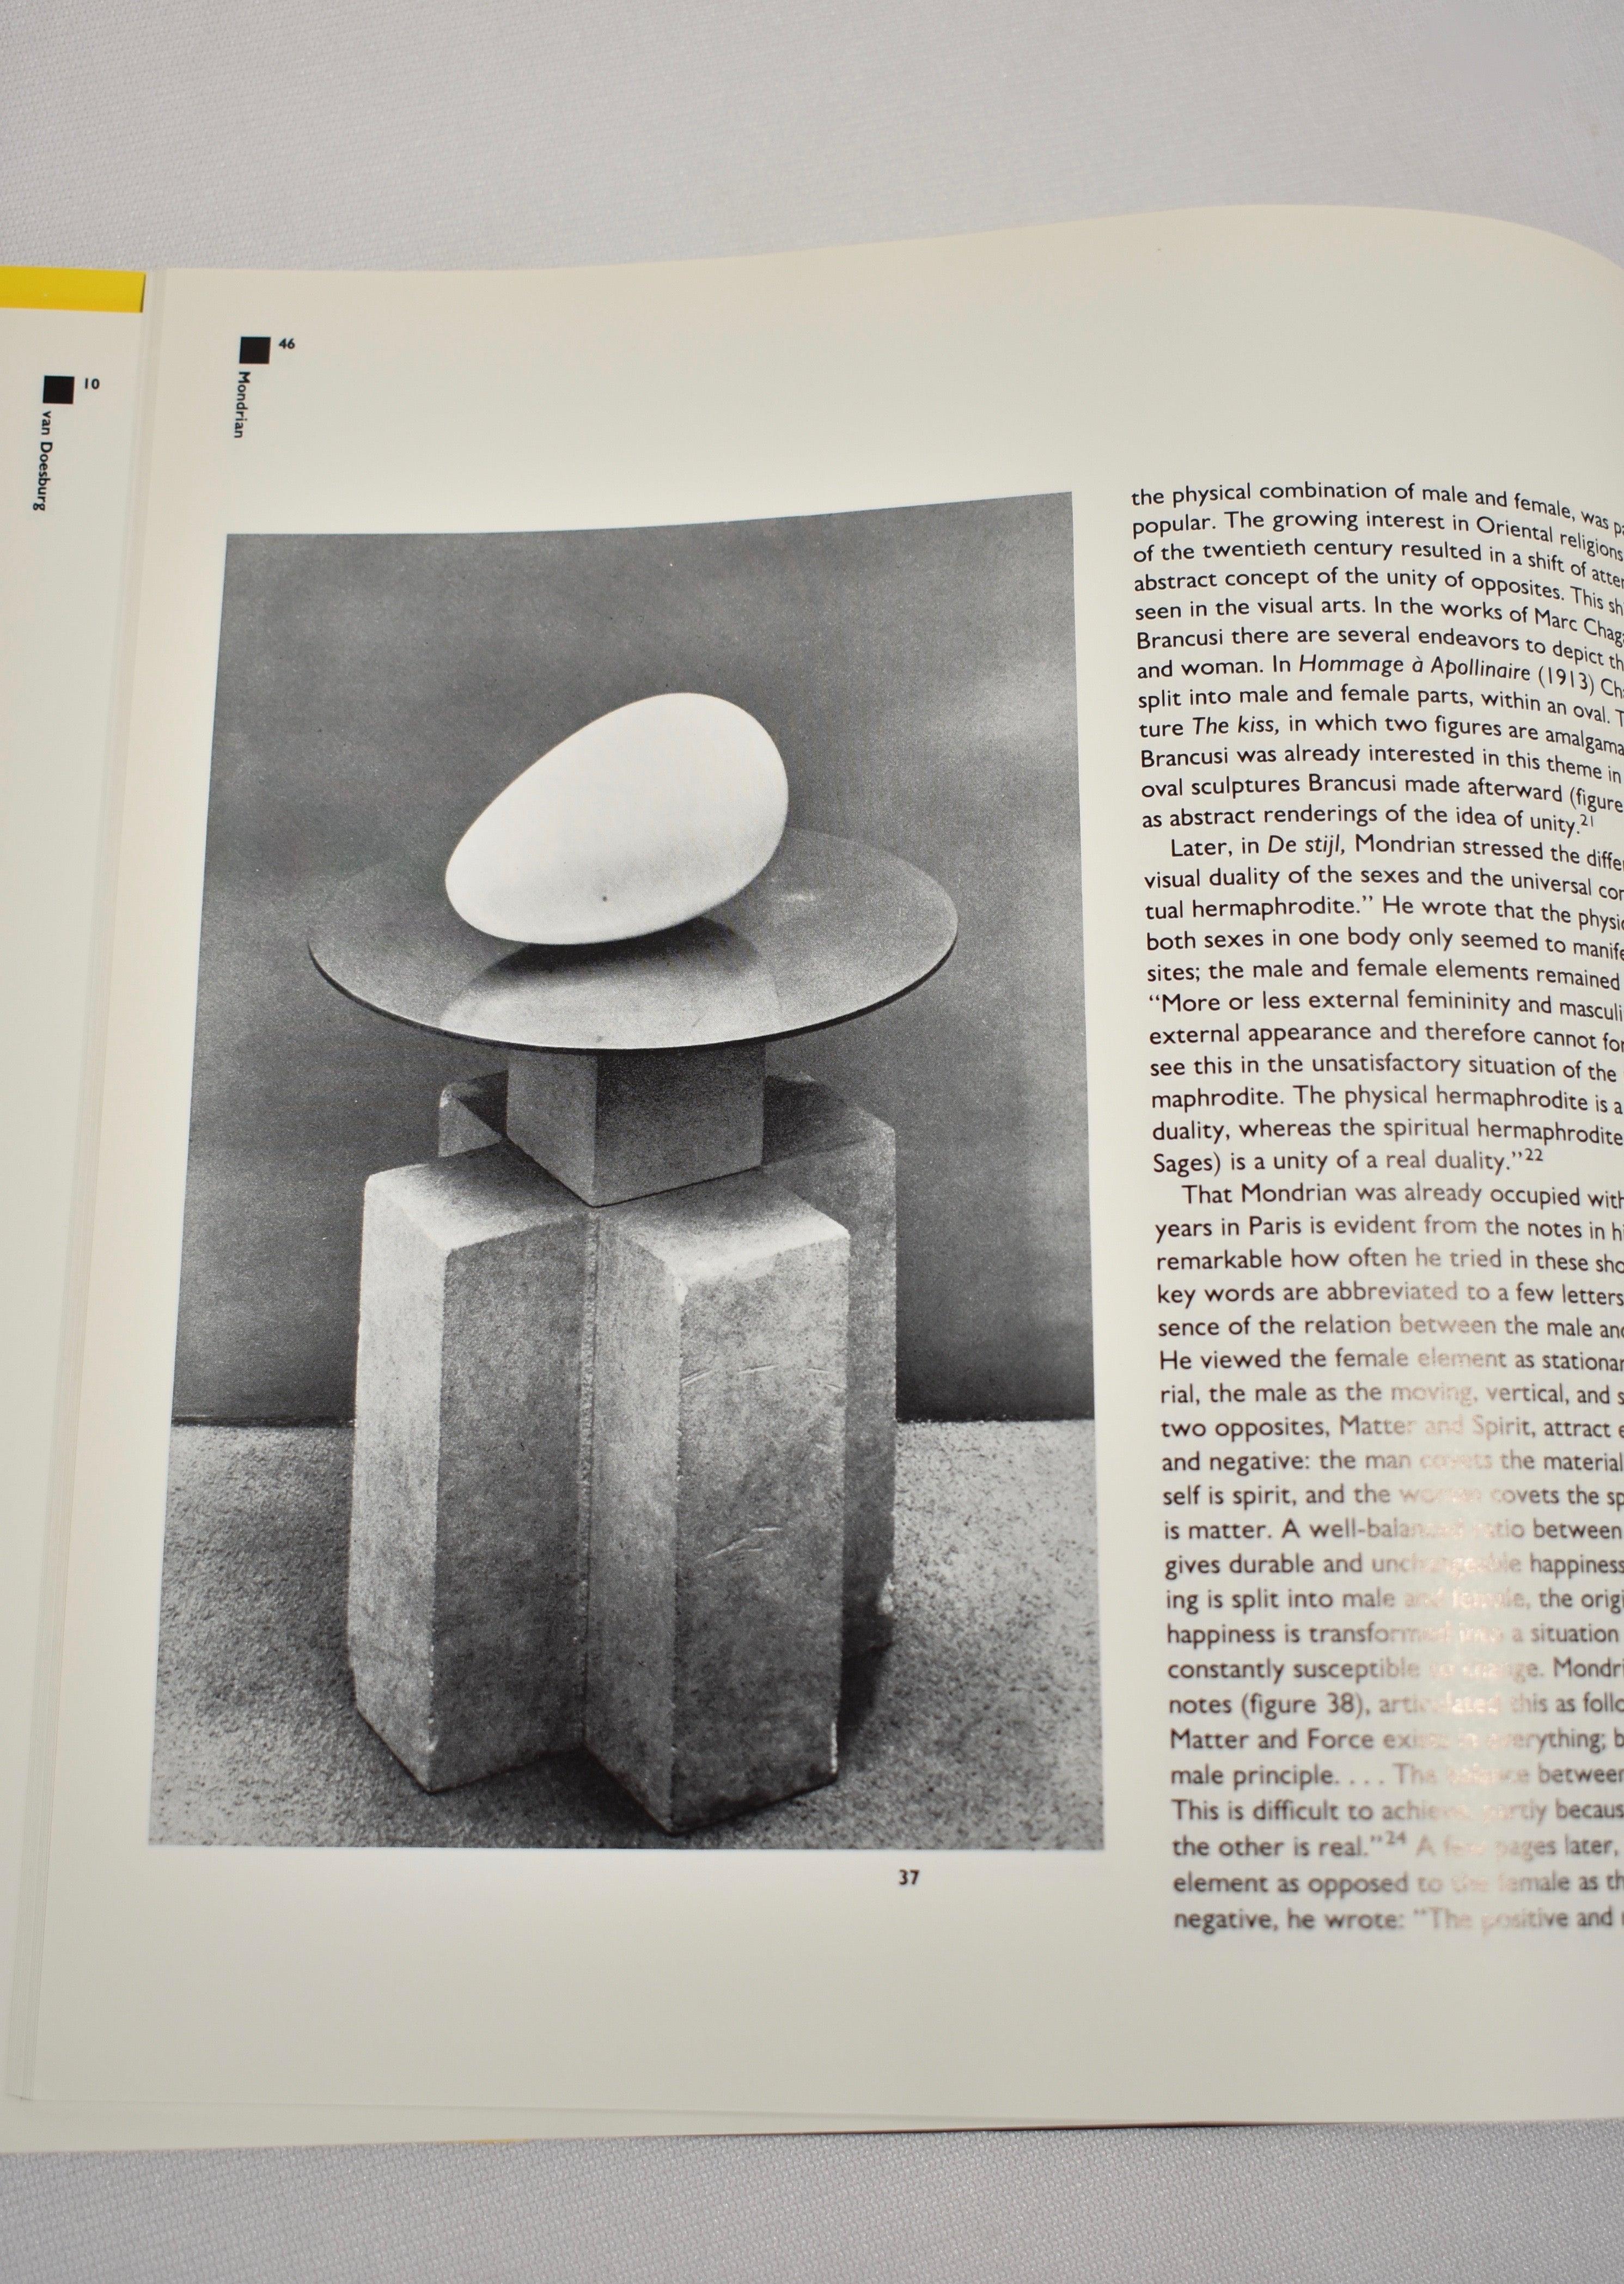 De Stijl : The Formative Years, un livre de table à couverture rigide consacré au mouvement artistique De Stijl, entre 1917 et 1922. Première édition, publiée en 1982, 284 pages. 

